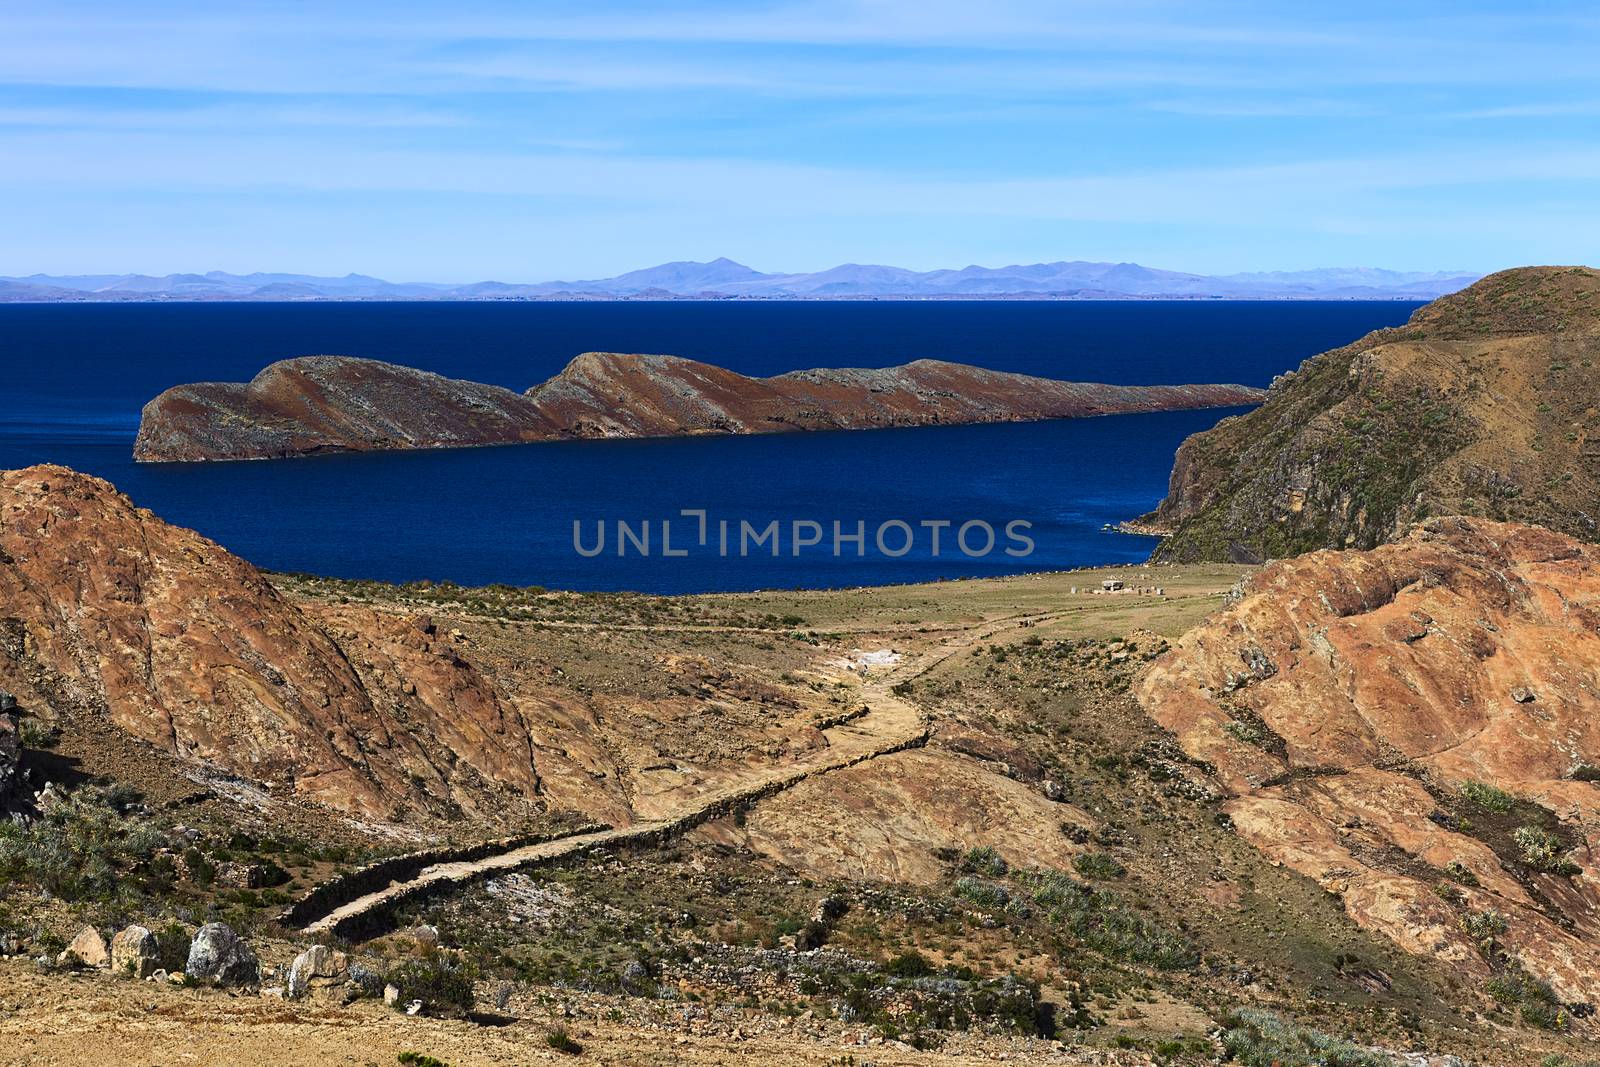 Isla del Sol (Island of the Sun) in Lake Titicaca, Bolivia by ildi